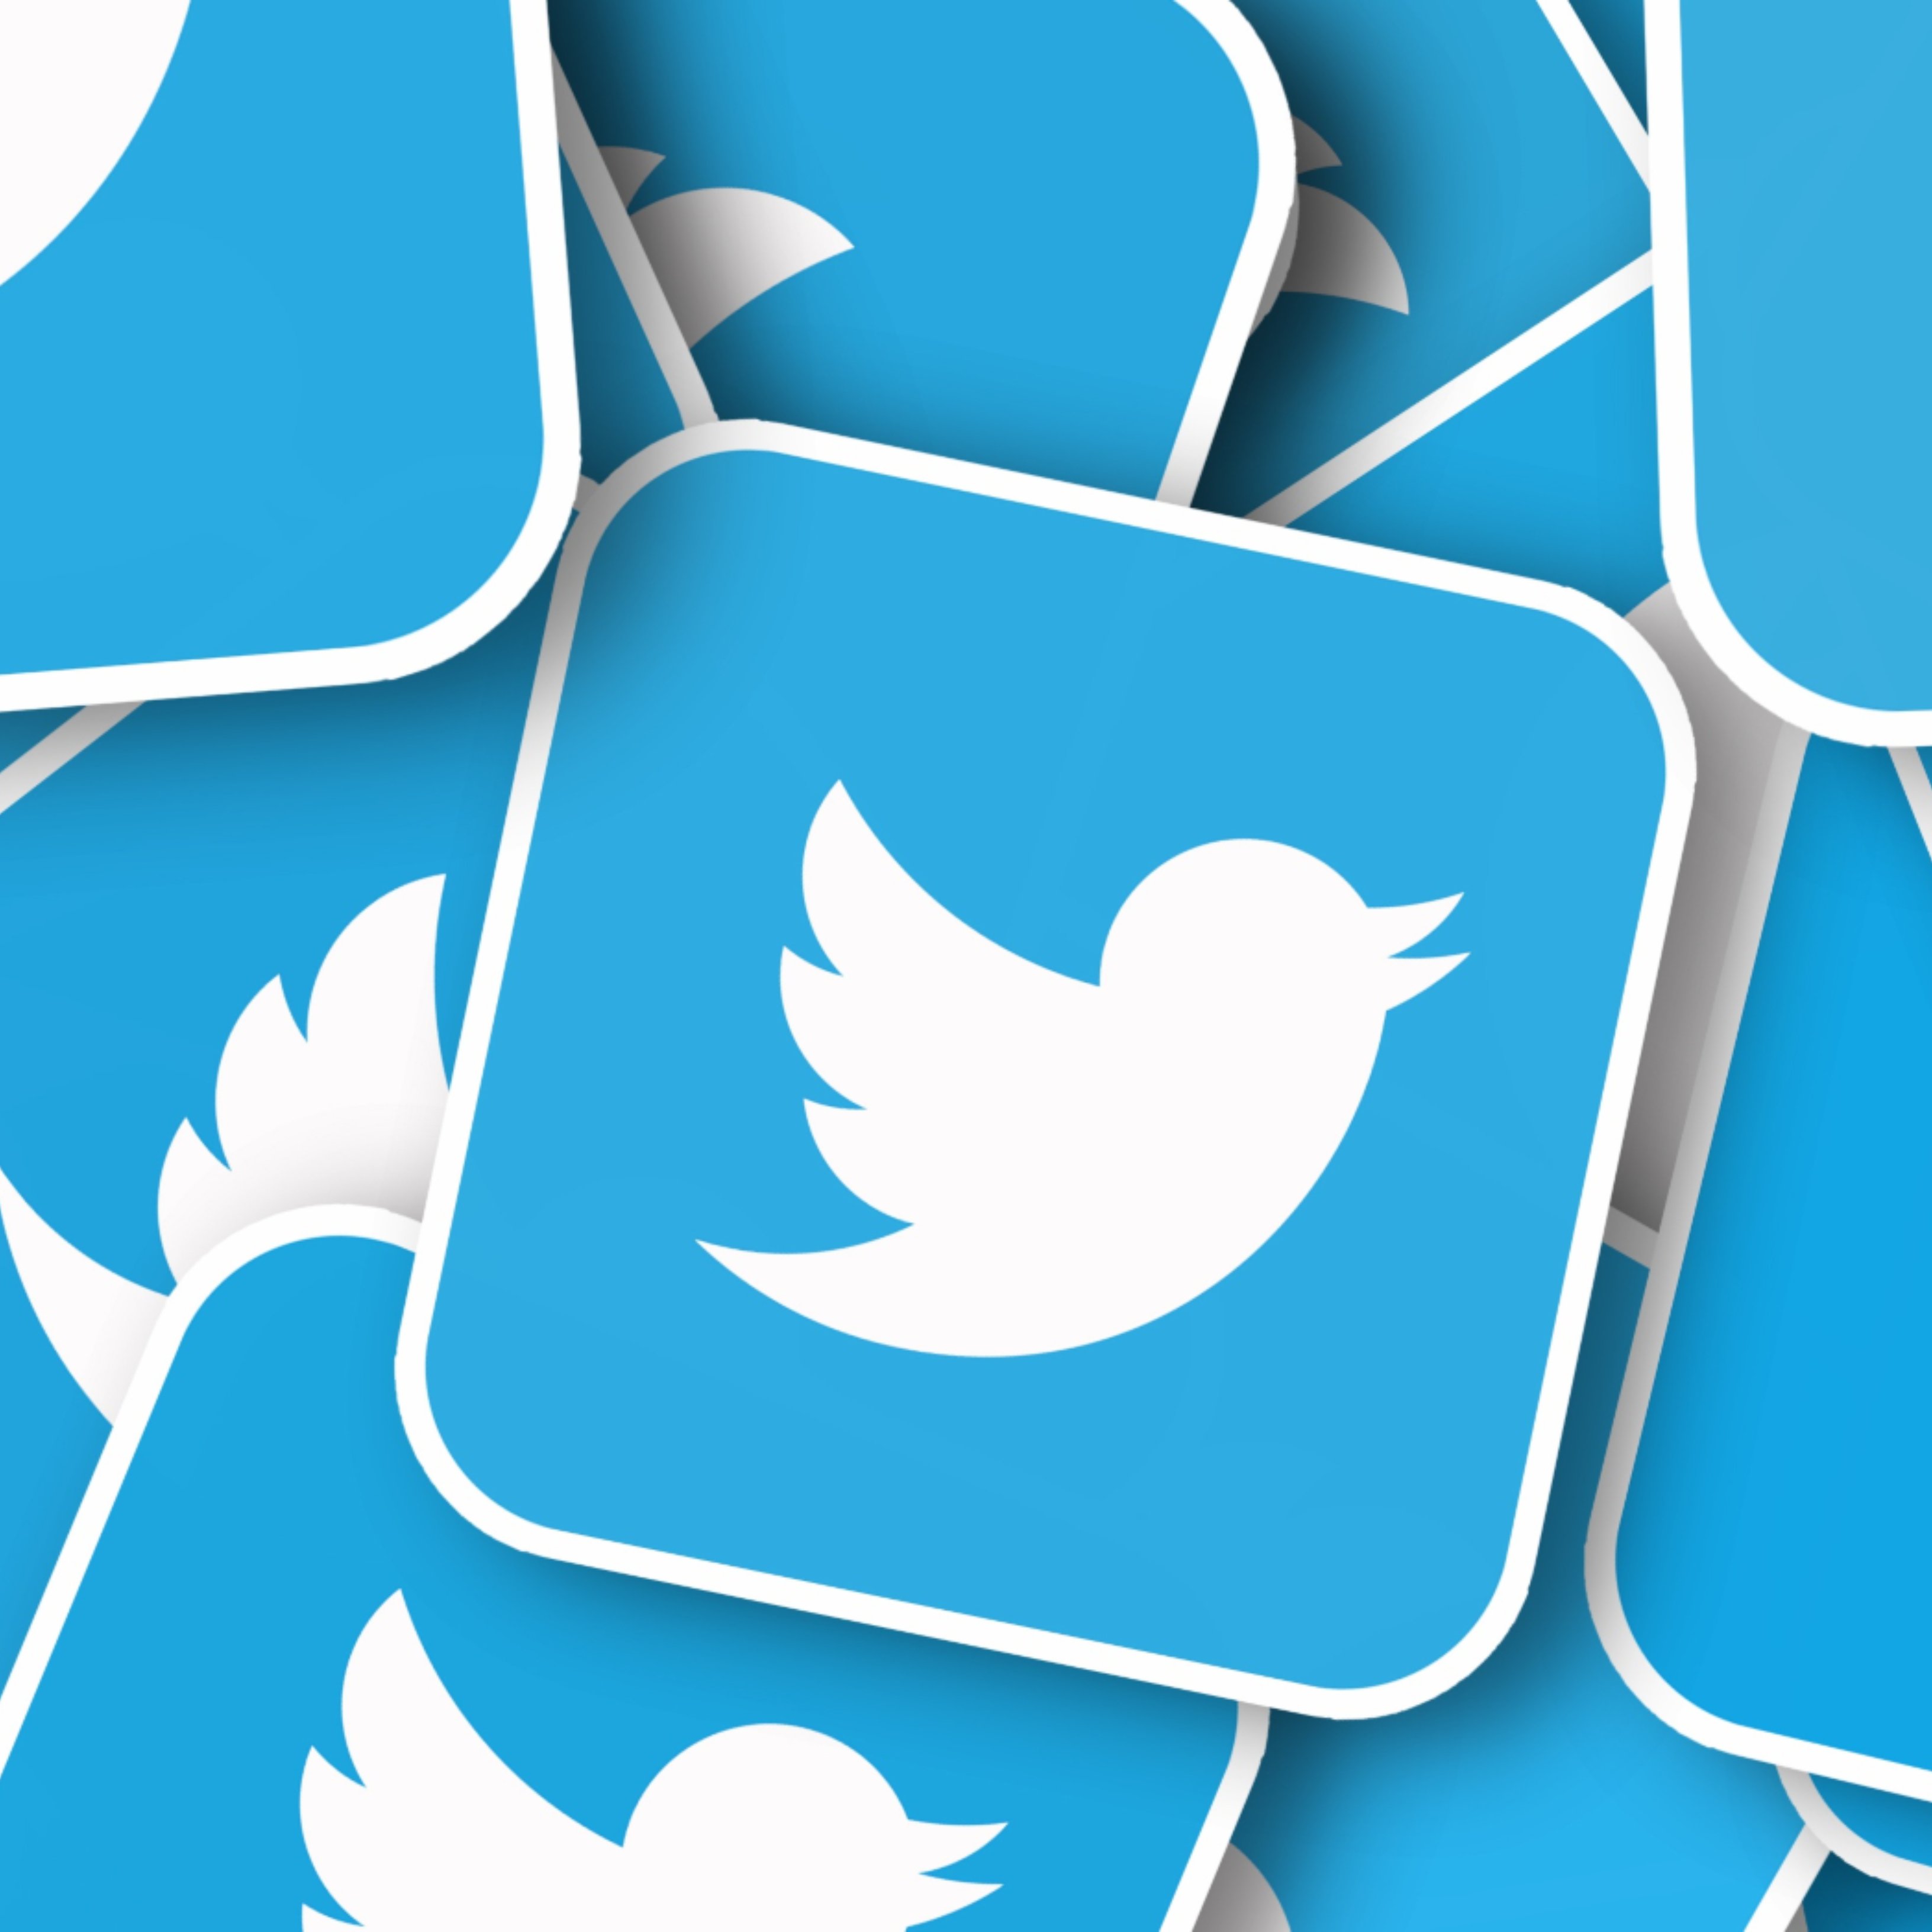 Twitter implanta una nueva función para ignorar las respuestas inadecuadas